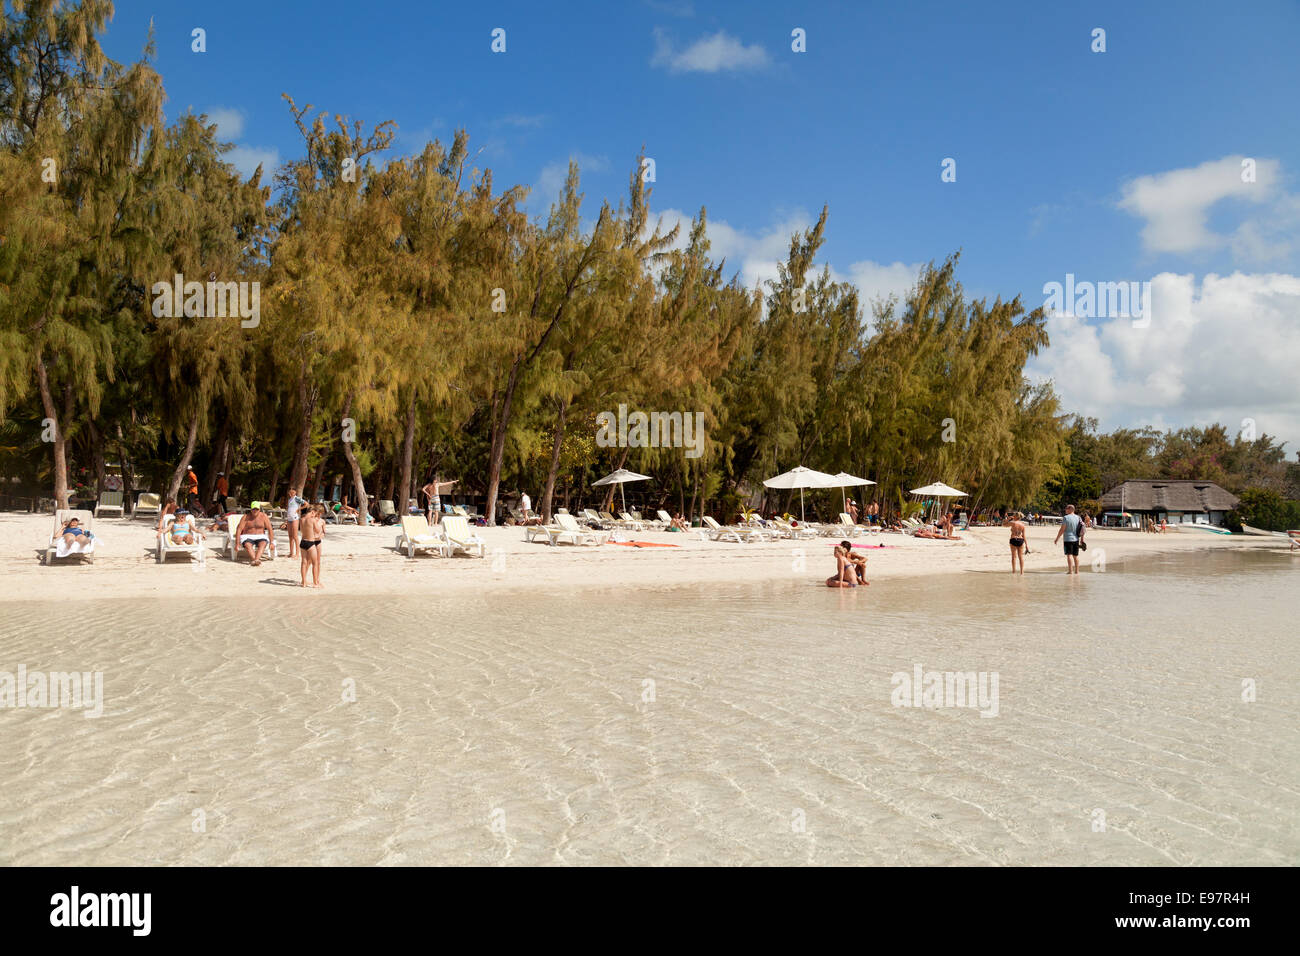 Les touristes sur la plage, l'Ile aux Cerfs, sur la côte est de l'île, l'Ile Maurice Banque D'Images